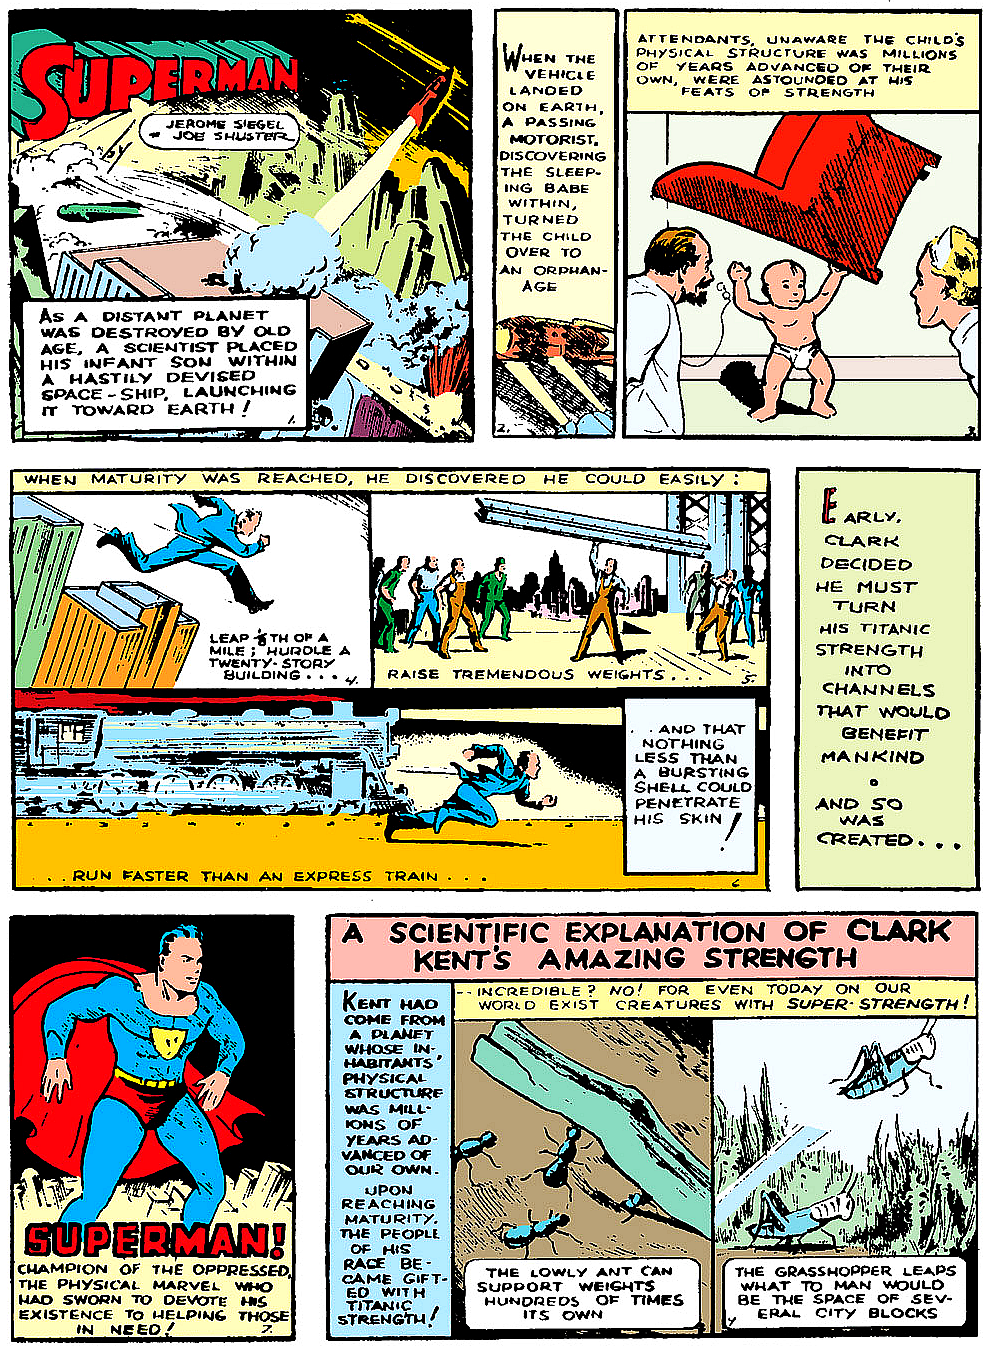 967 - Les comics que vous lisez en ce moment - Page 6 Action-comics-1-p1